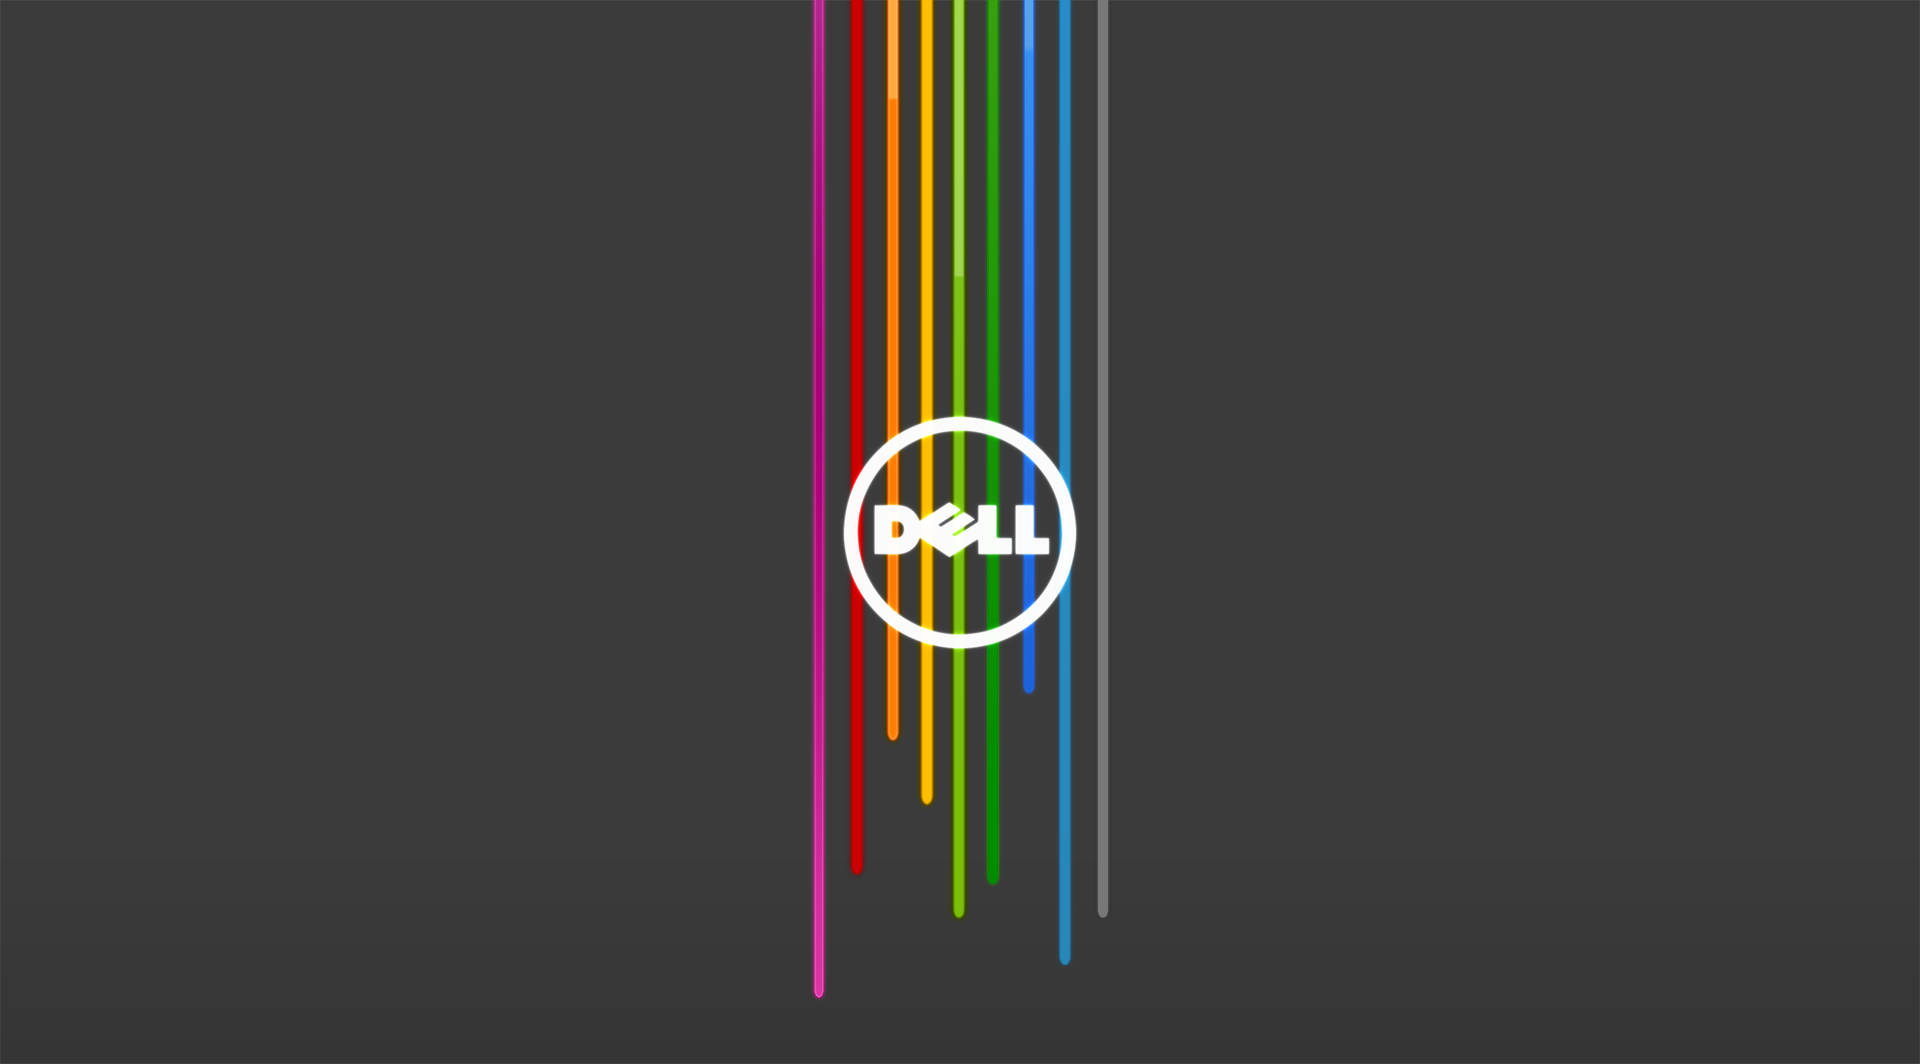 Dell 4k Logo On Grey Background